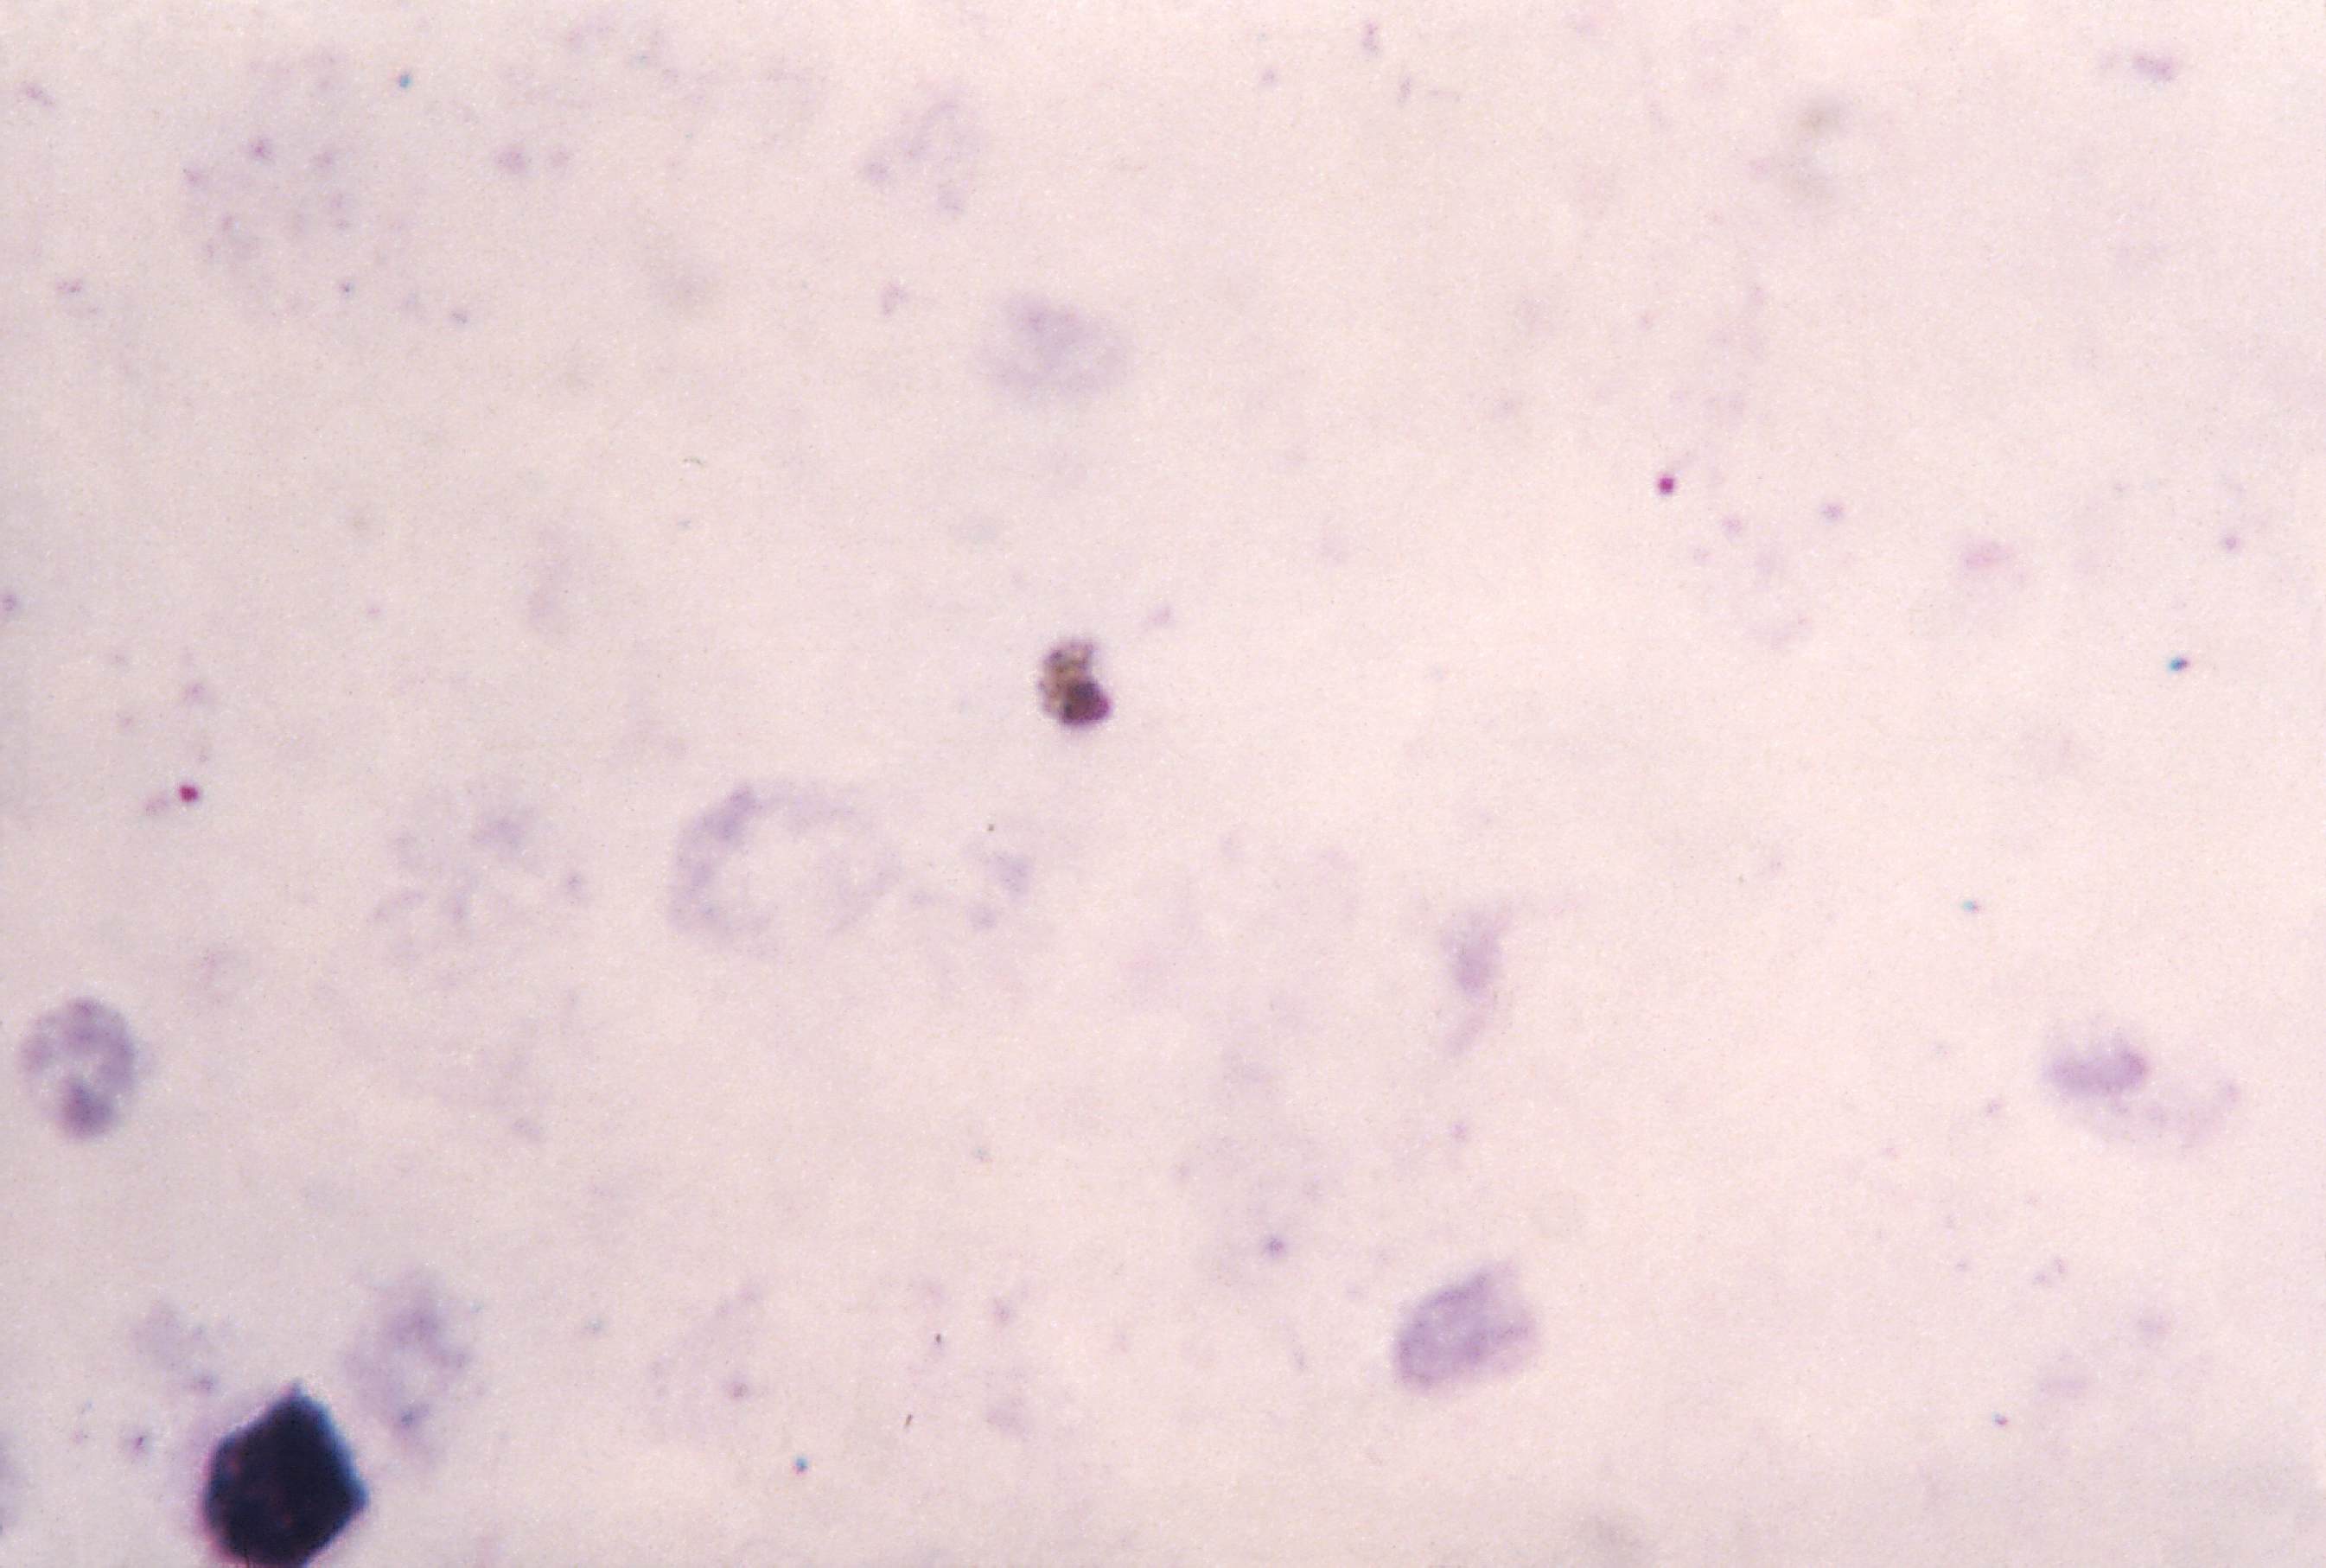 Цитоплазма фото под микроскопом. P malariae gametocyte. Обои цитоплазма кровь. Цитоплазма серо-голубого, дымчатого цвета характерна для. Многочисленные мелкие тельца